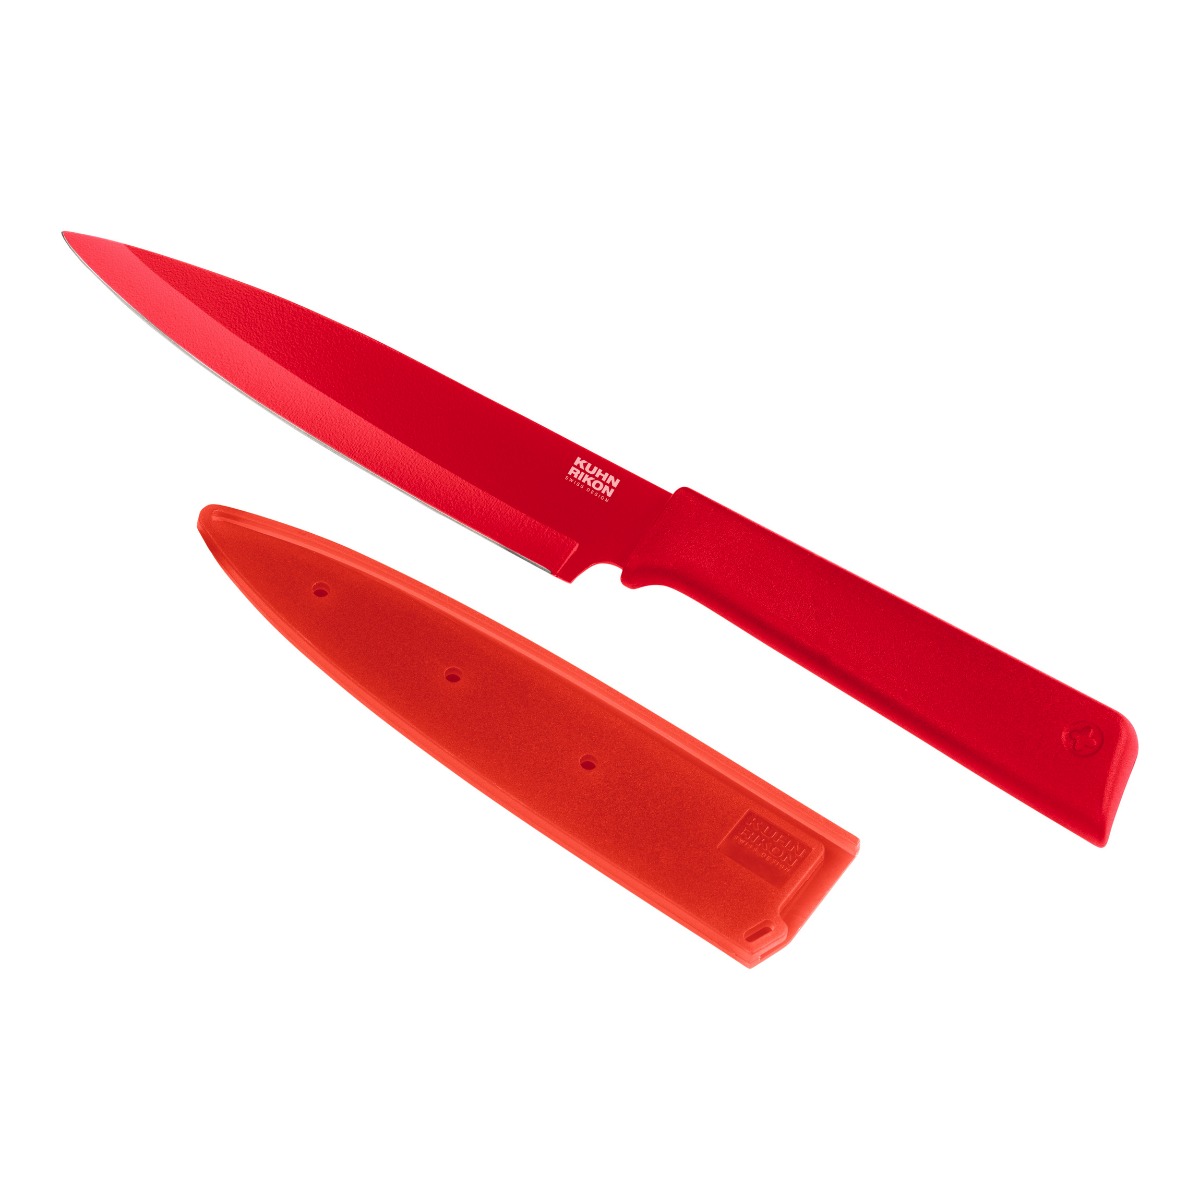 Kuhn Rikon - Colori(r)+ Utility Knife red